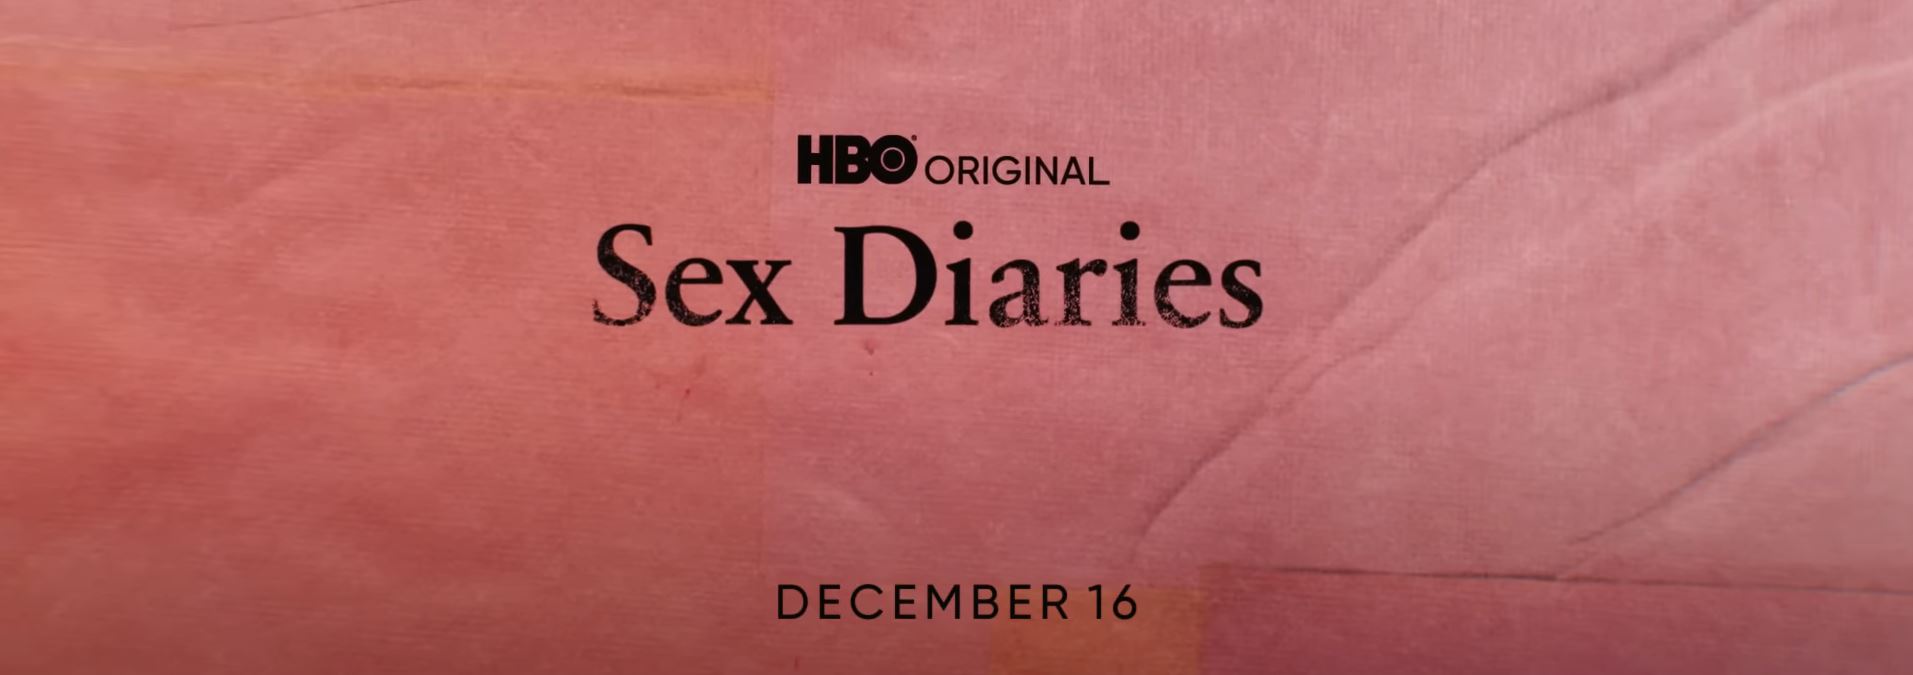 ЛГБТК+ доксериал «Дневники секса» станет вашим любимым